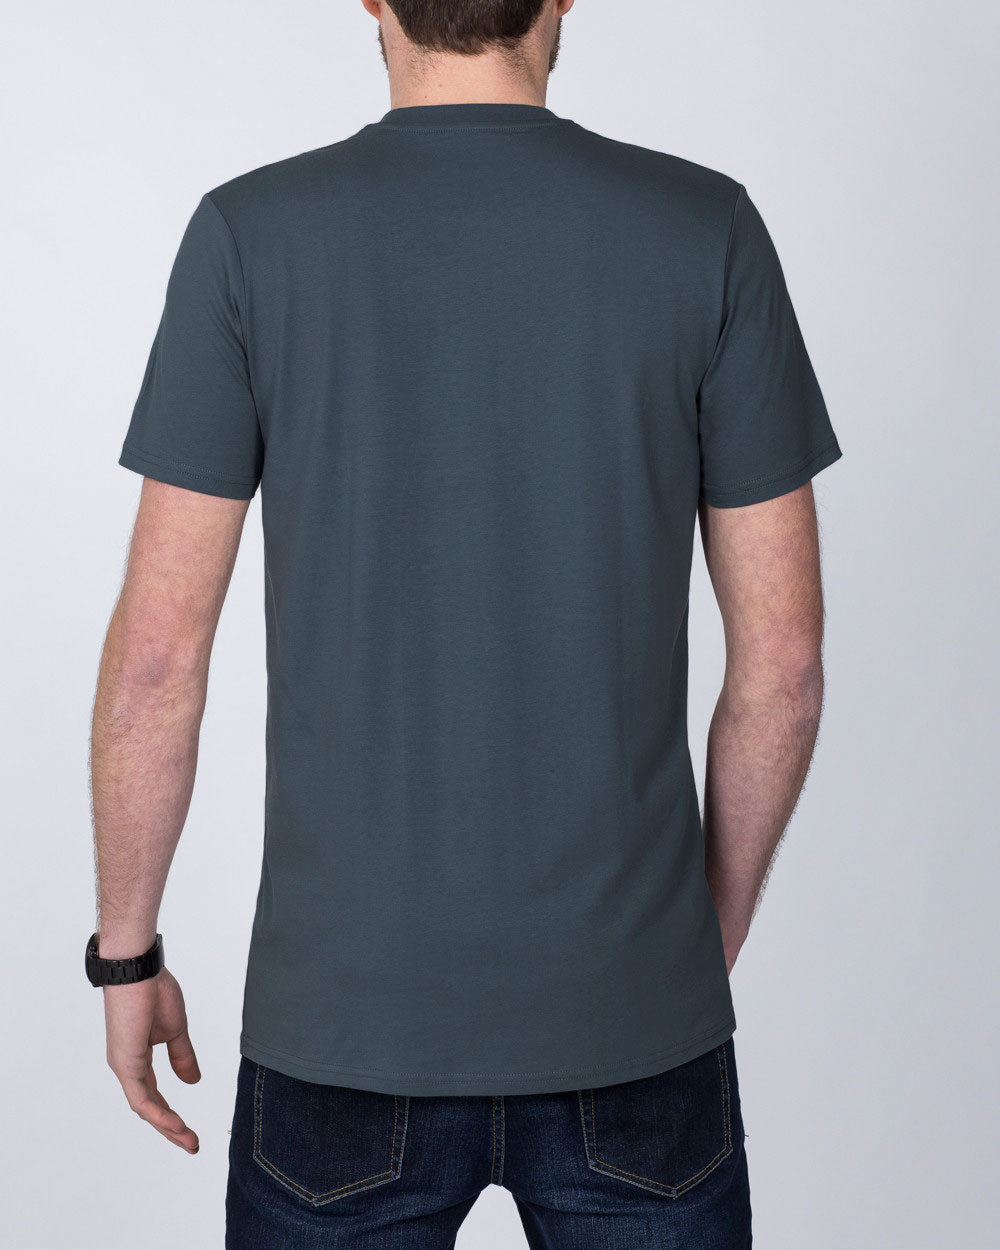 Girav Sydney Tall T-Shirt (dark grey)